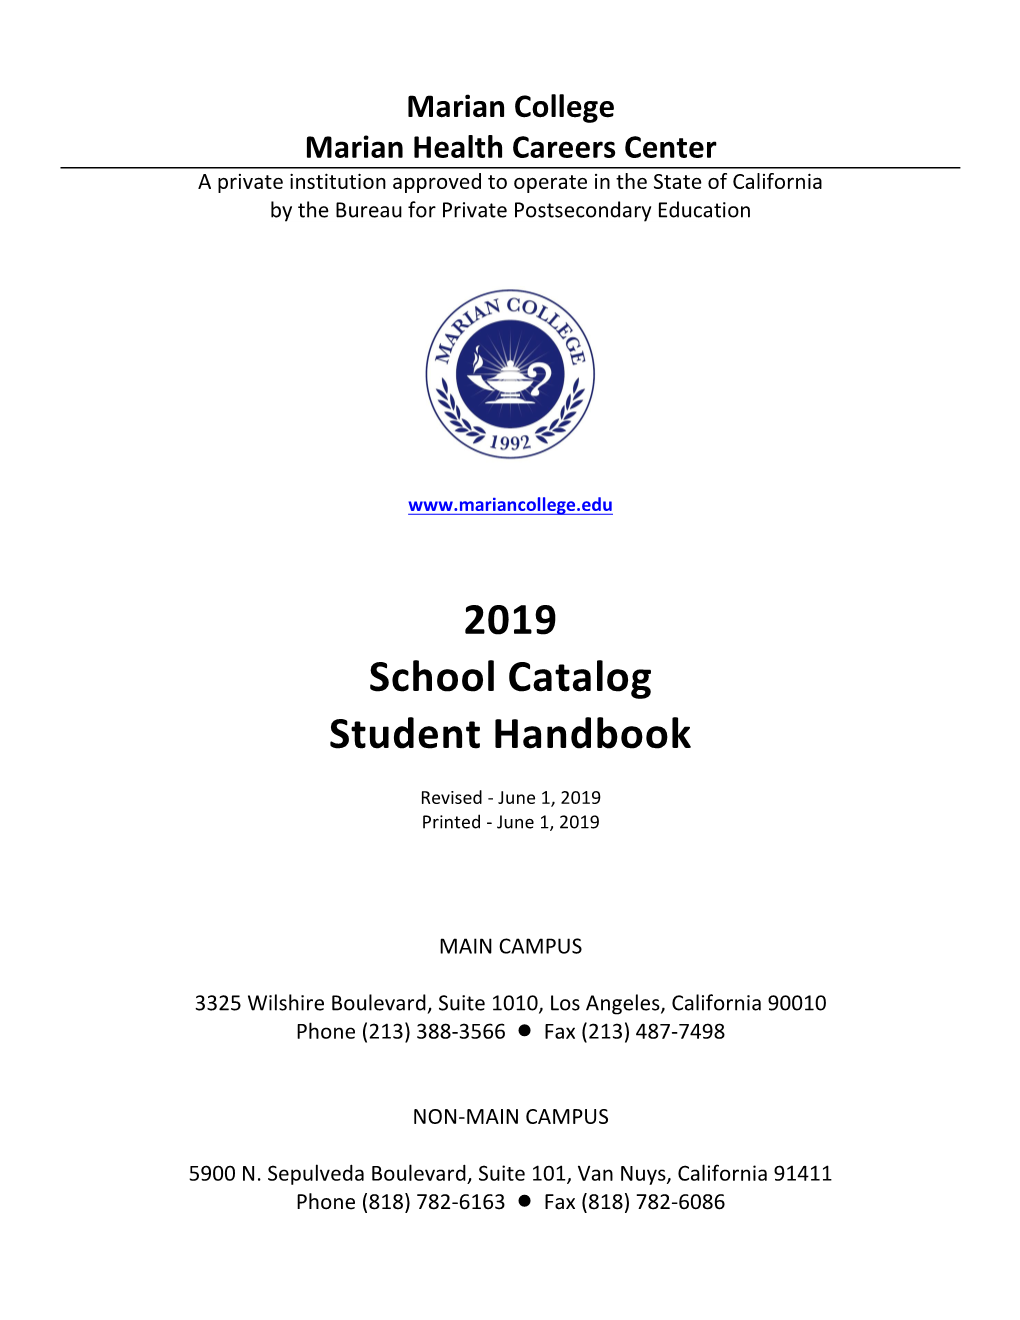 2019 School Catalog Student Handbook